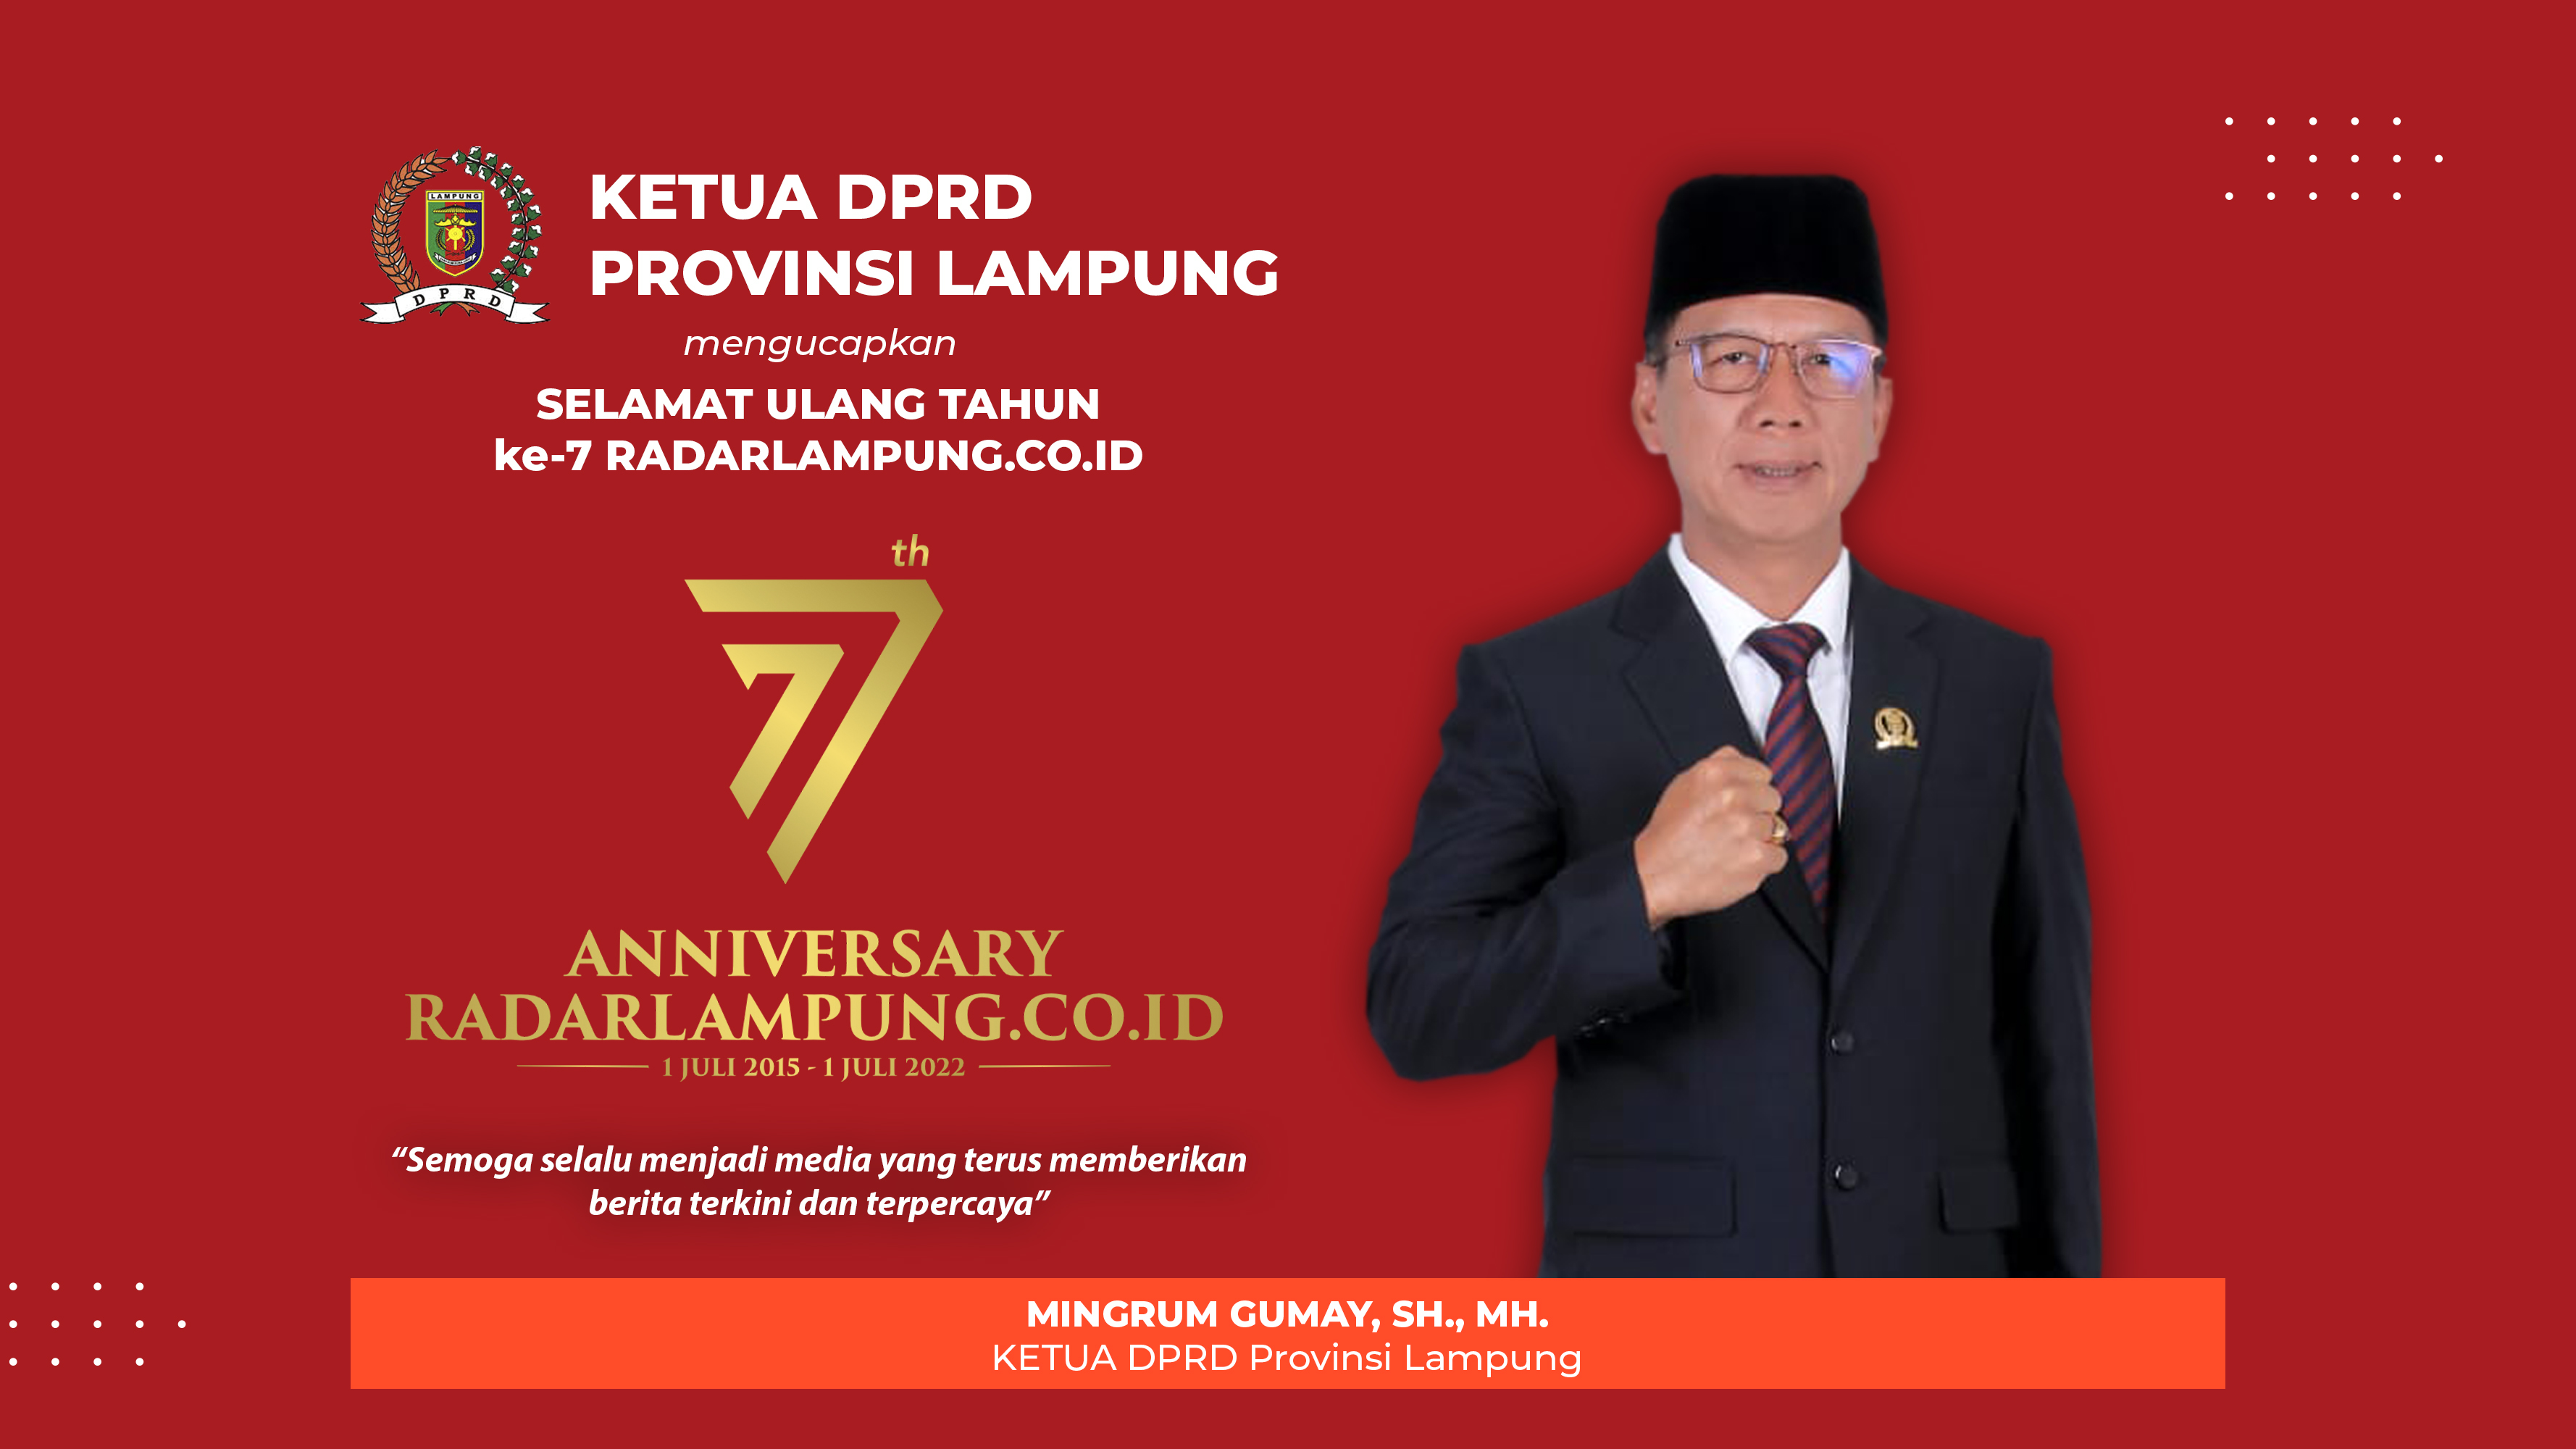 Ketua DPRD Lampung Mingrum Gumay Mengucapkan Selamat Ulang Tahun ke-7 Radarlampung.co.id